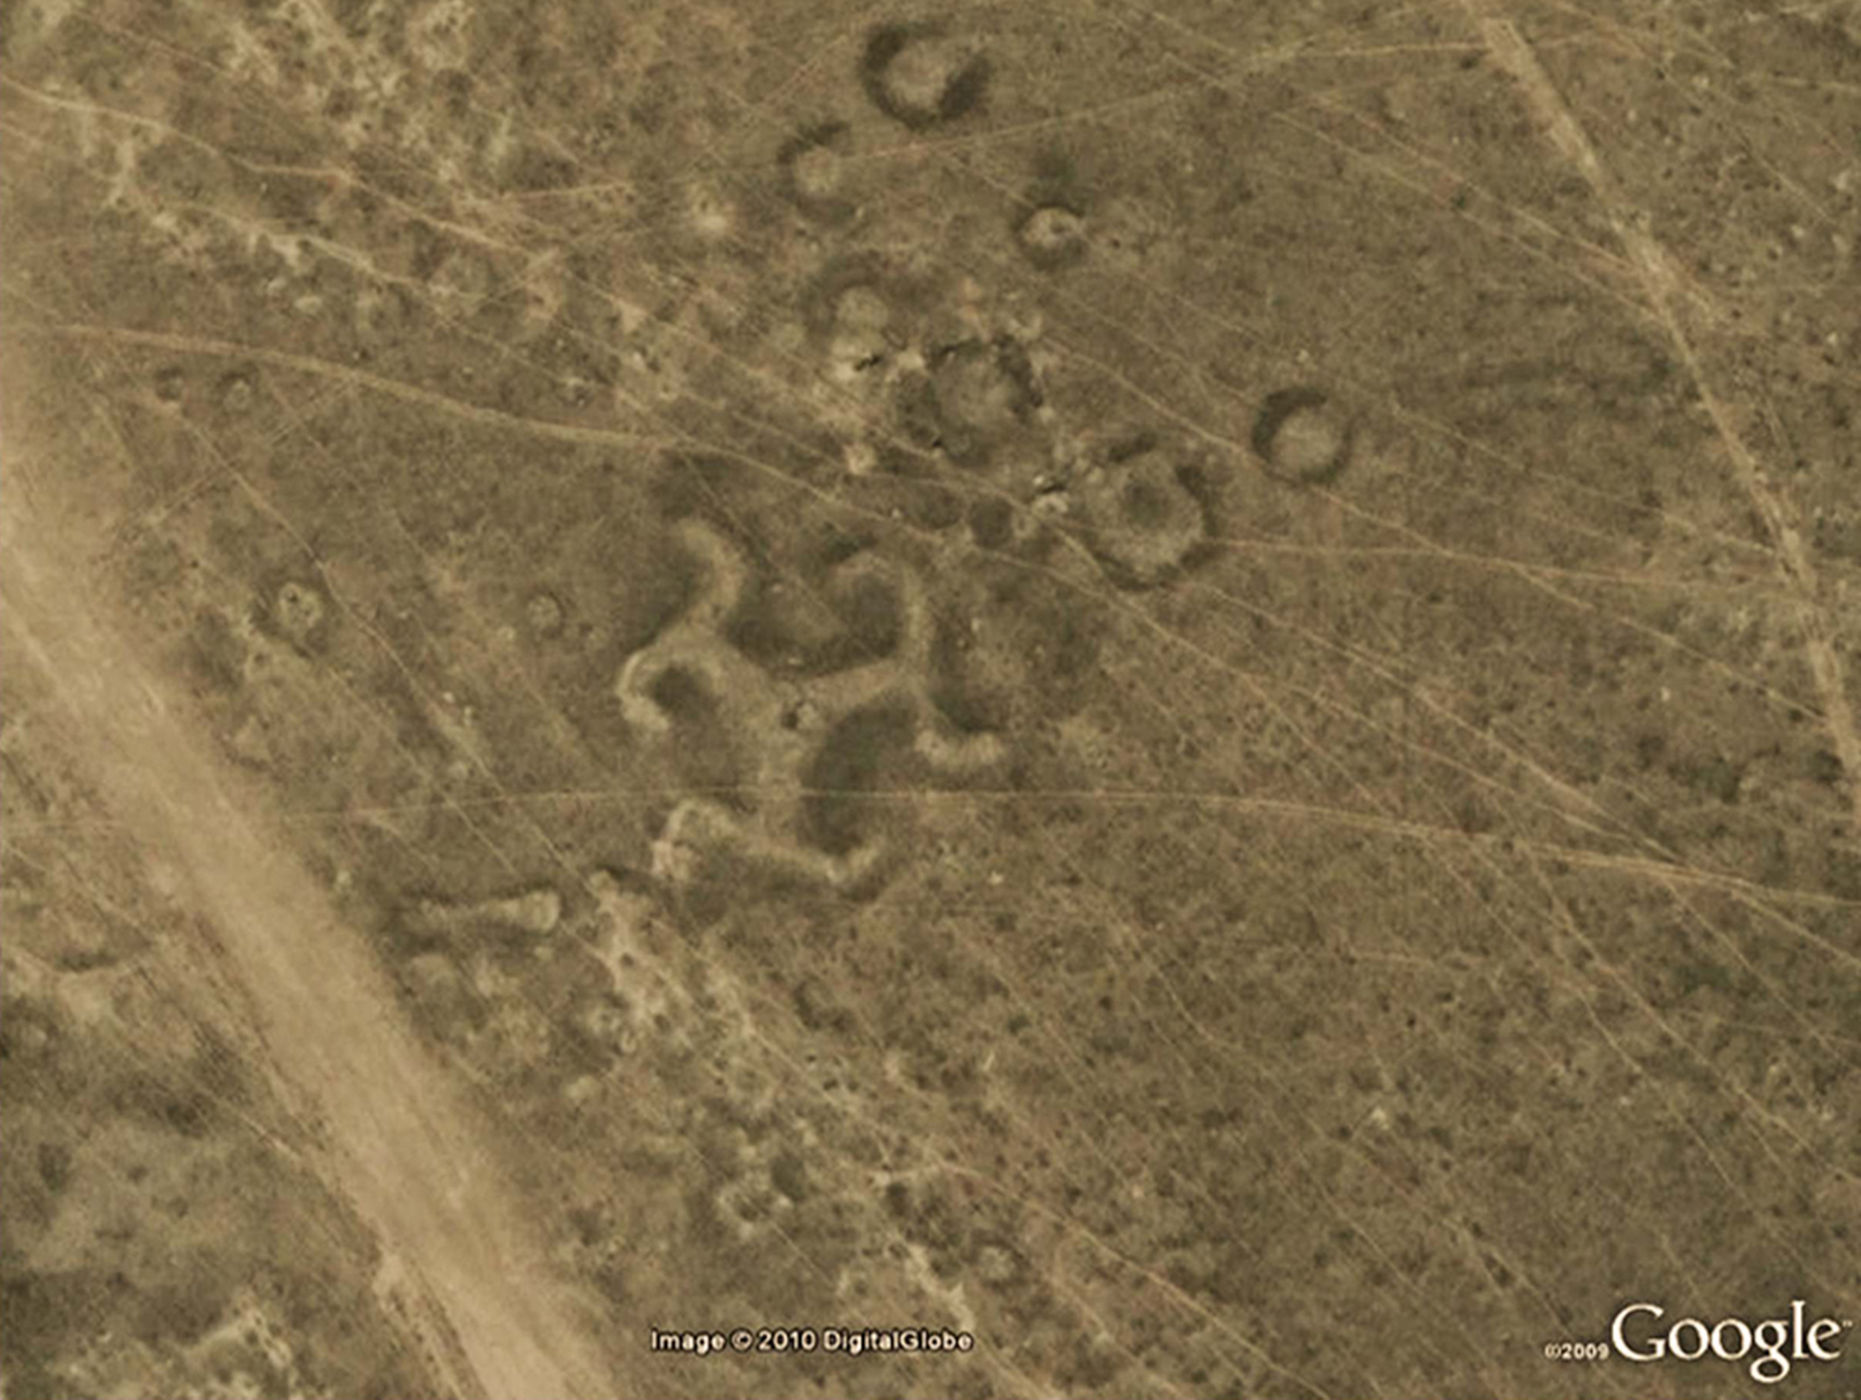 24 images peu communes capturées par Google Earth Kazakhstan-geoglyphs-1